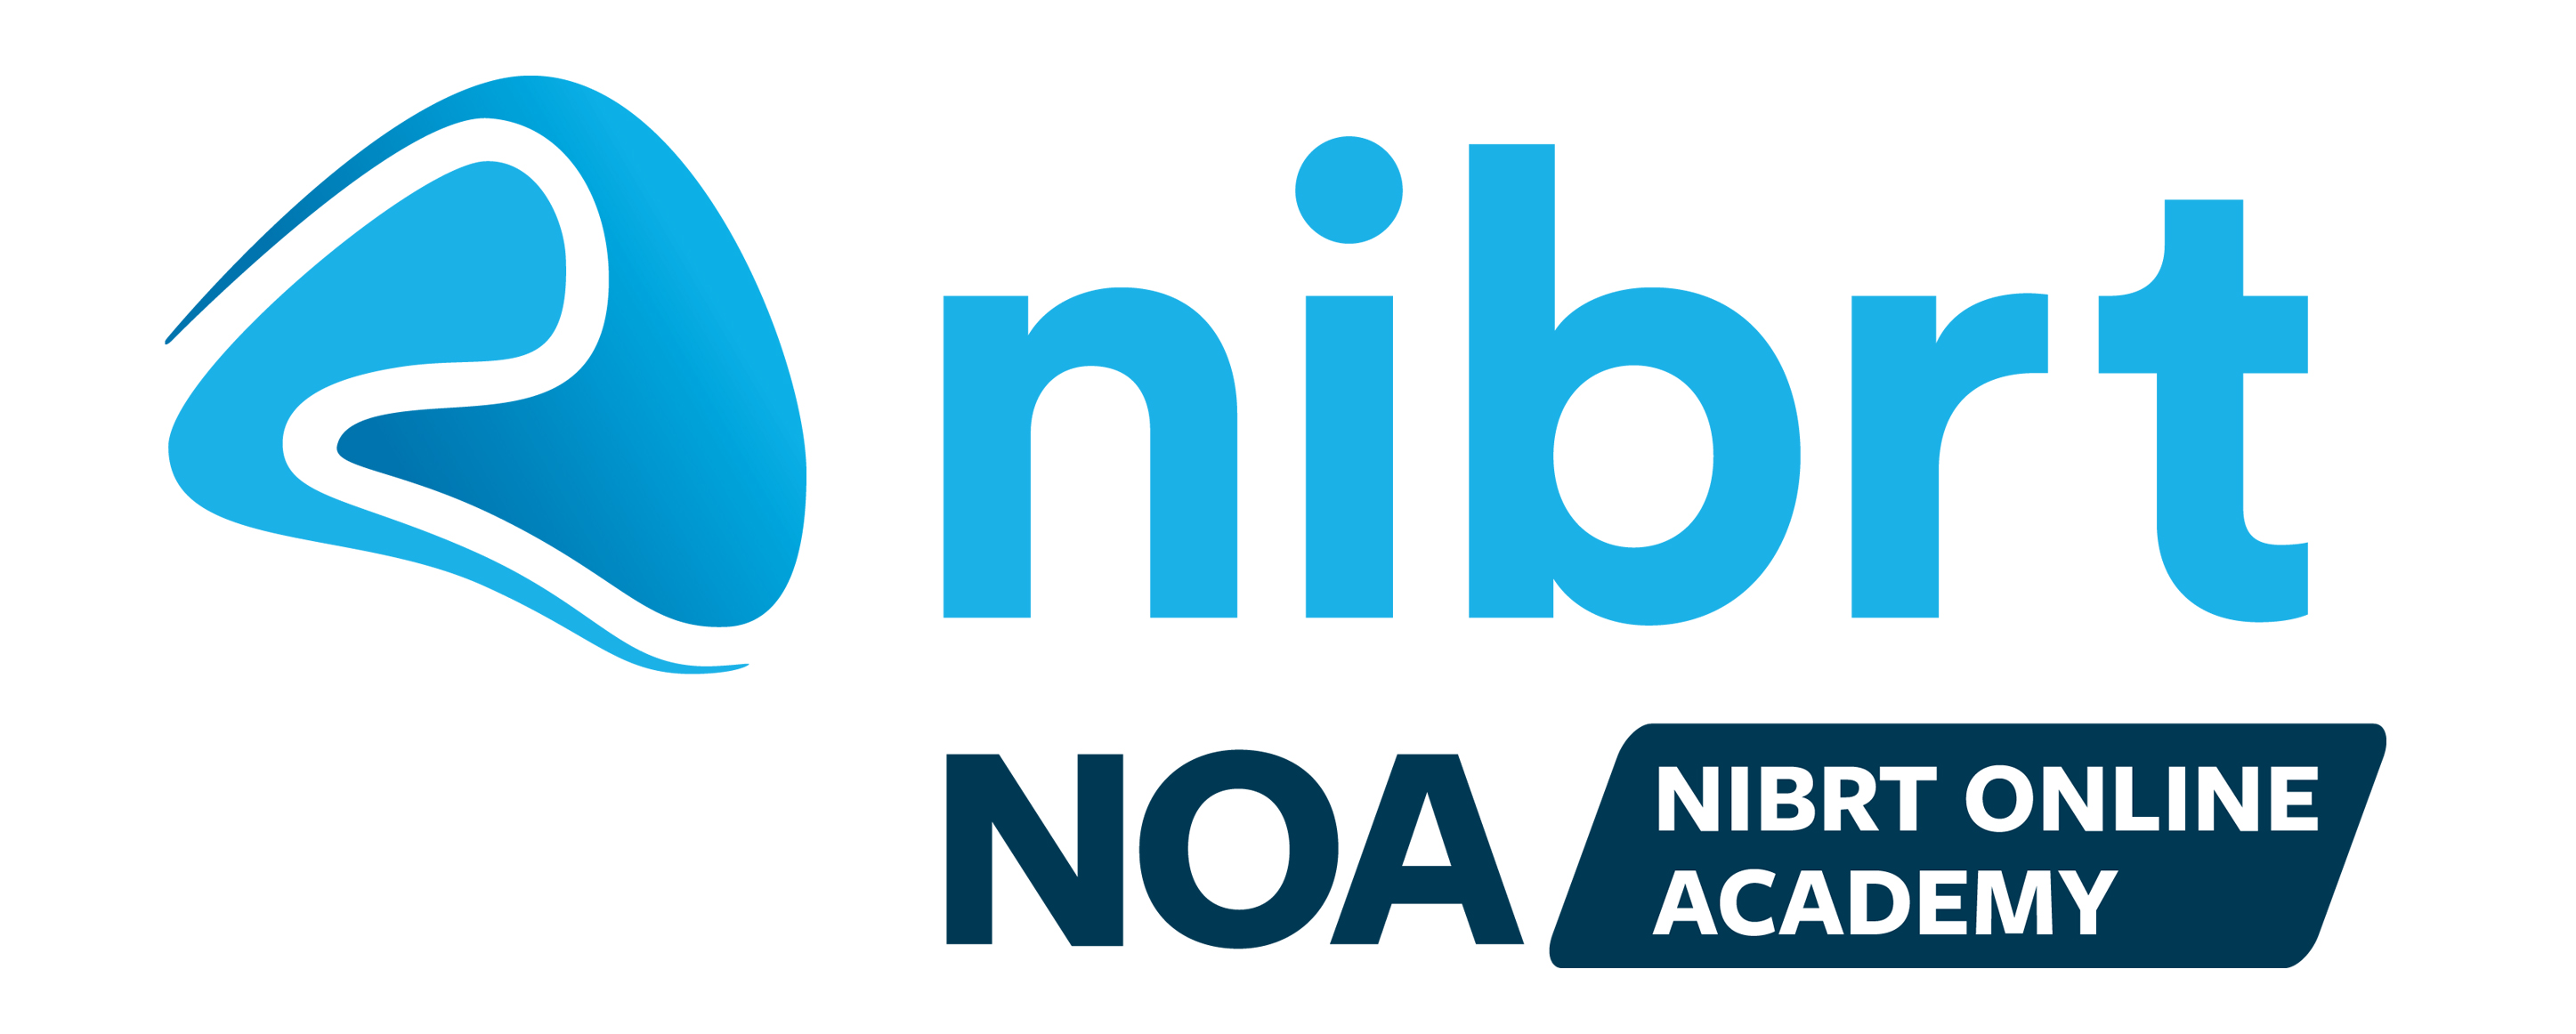 NOA logo (Final)